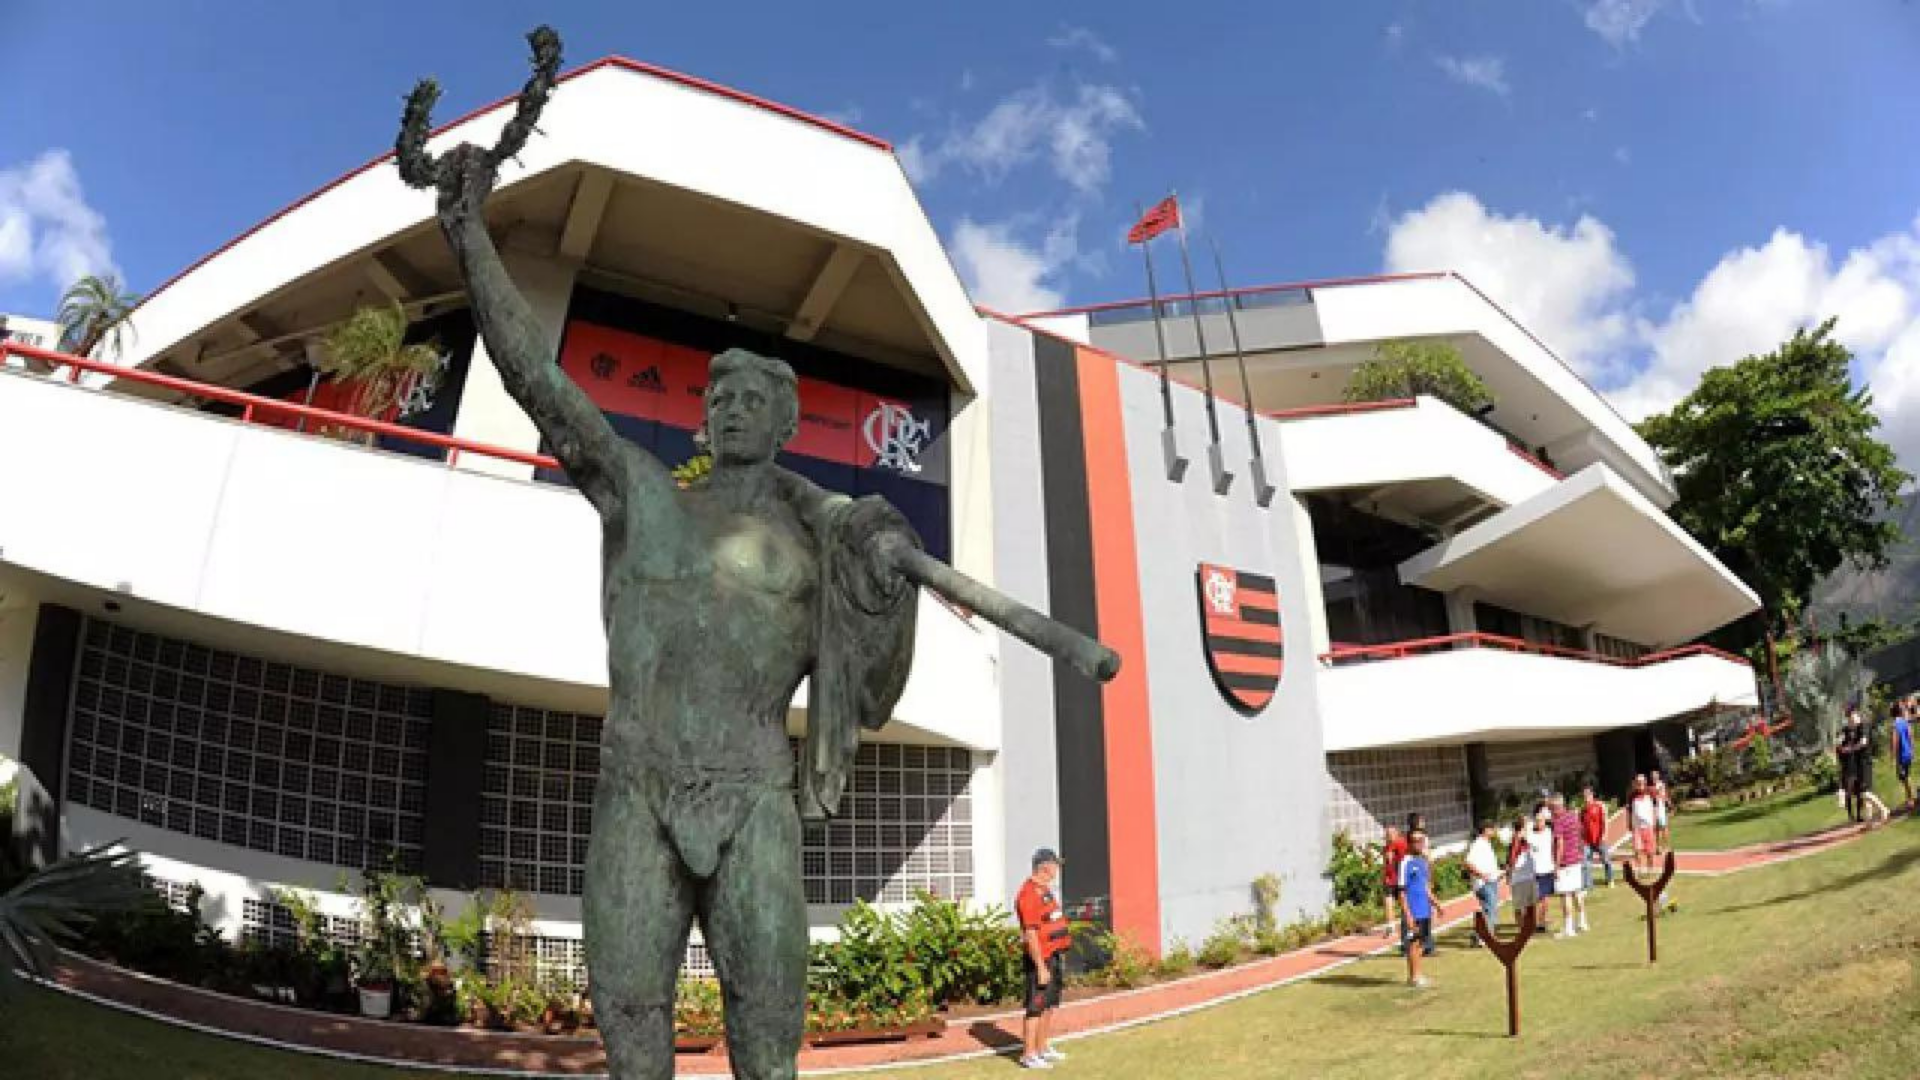 Homem tenta estuprar criança de 10 anos em vestiário do Flamengo. Foto da entrada do Clube, um prédio com arquitetura contemporânea, símbolo do Flamengo e uma estátua ao lado de fora.